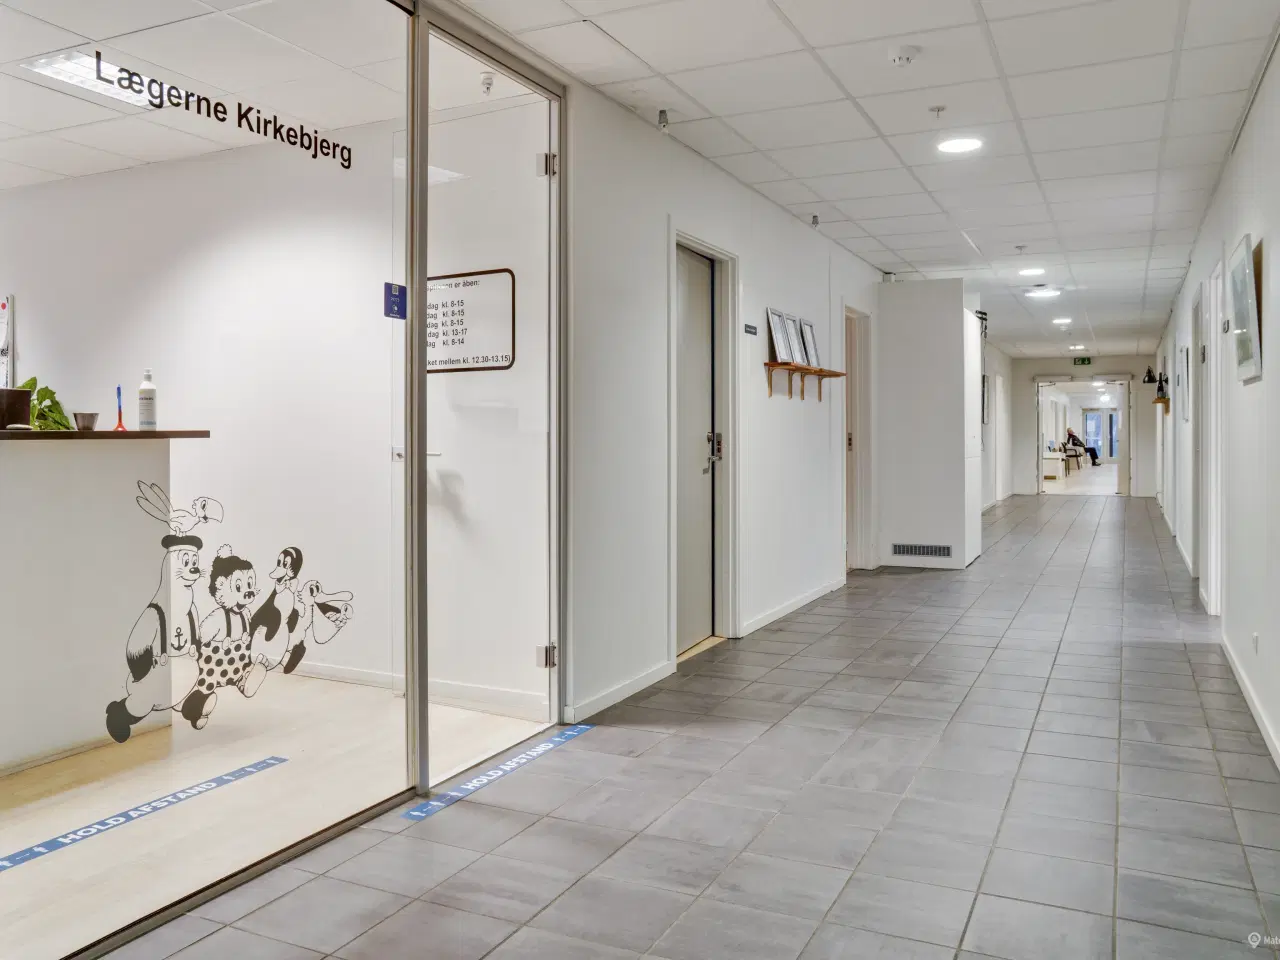 Billede 2 - Kliniklokaler/behandlerrum i moderne Sundhedshus Brøndby